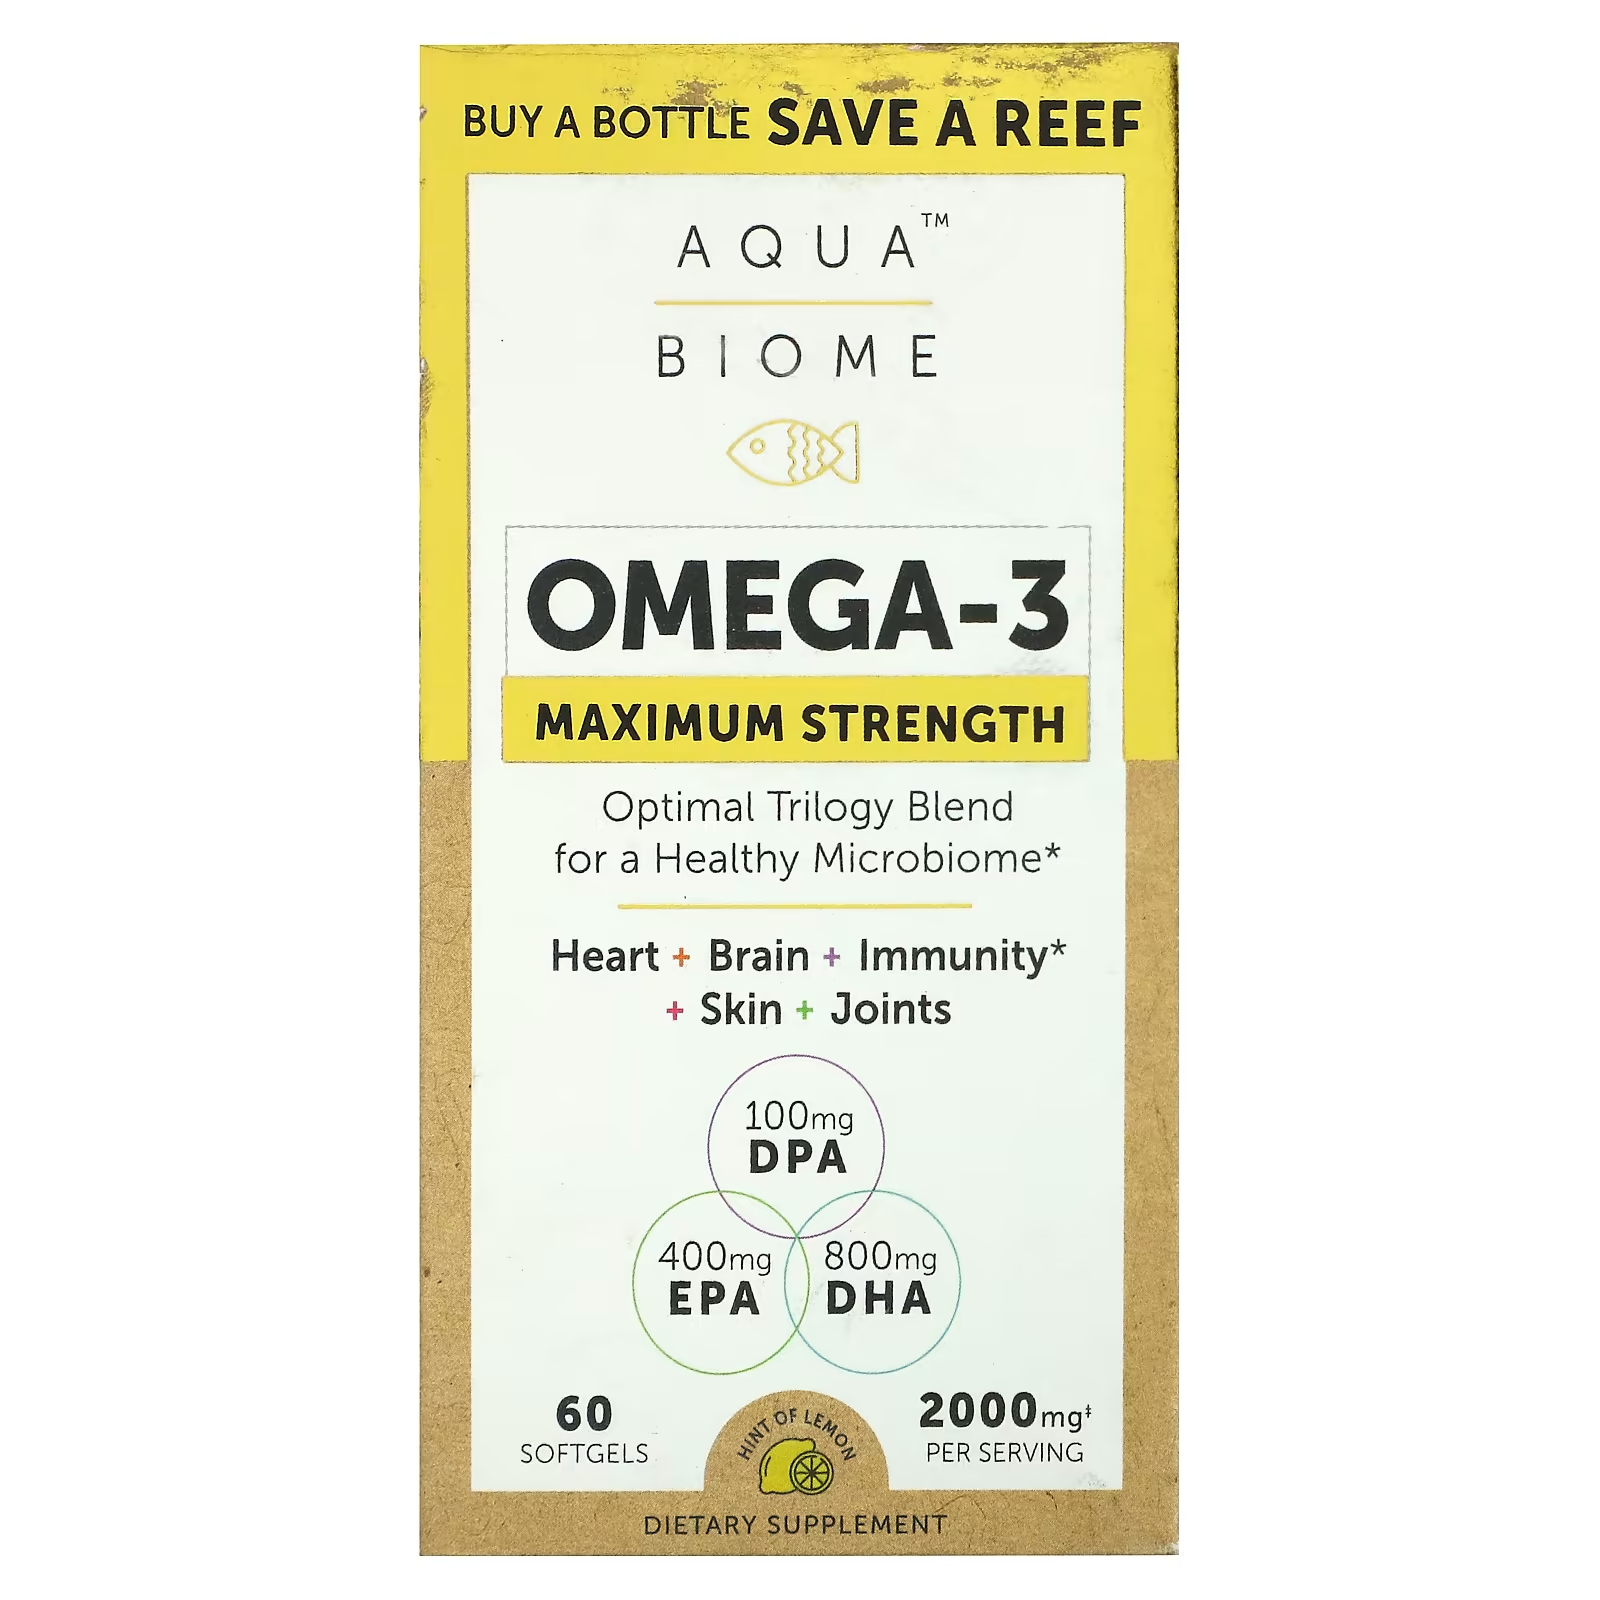 Omega-3 максимальной силы Enzymedica Aqua Biome лимон, 60 мягких таблеток enzymedica aqua biome omega 3 classic strength с лимоном 1200 мг 60 мягких таблеток 600 мг на мягкую таблетку